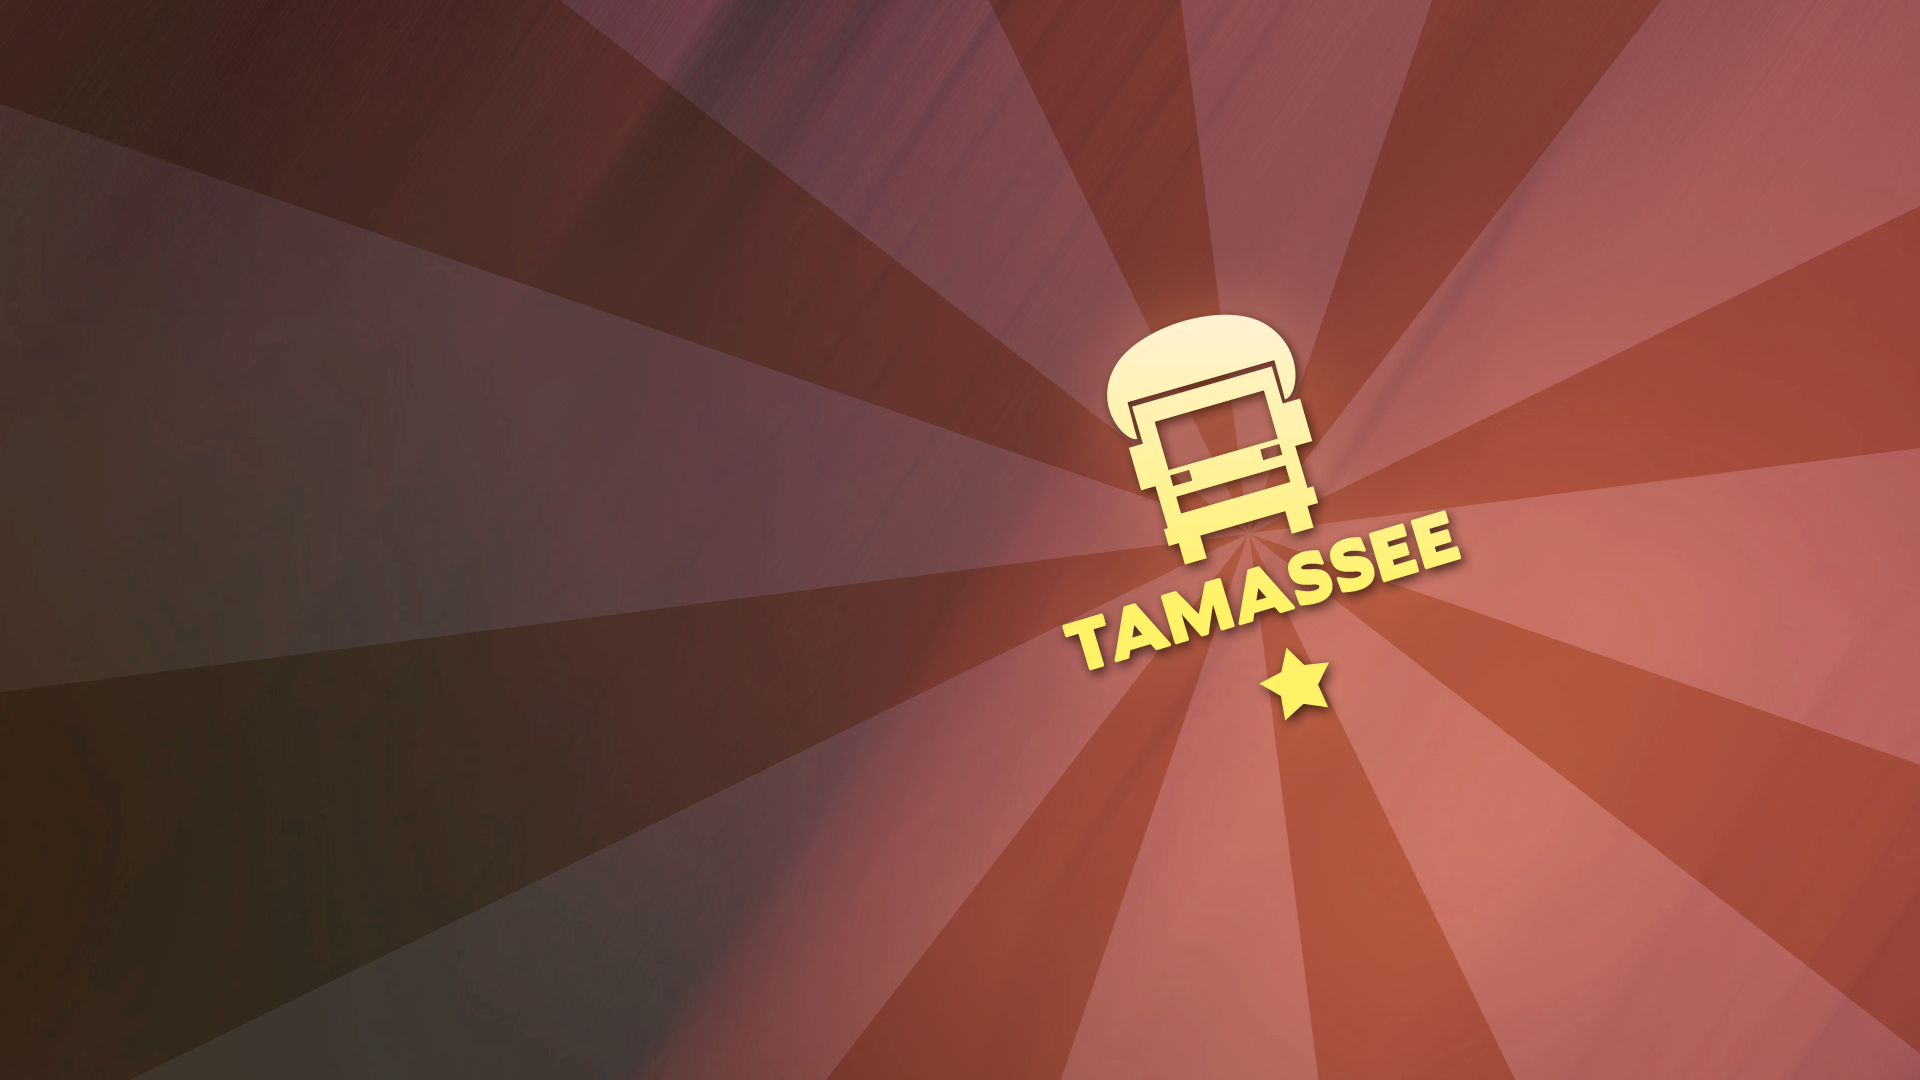 Tank truck insignia 'Tamassee'